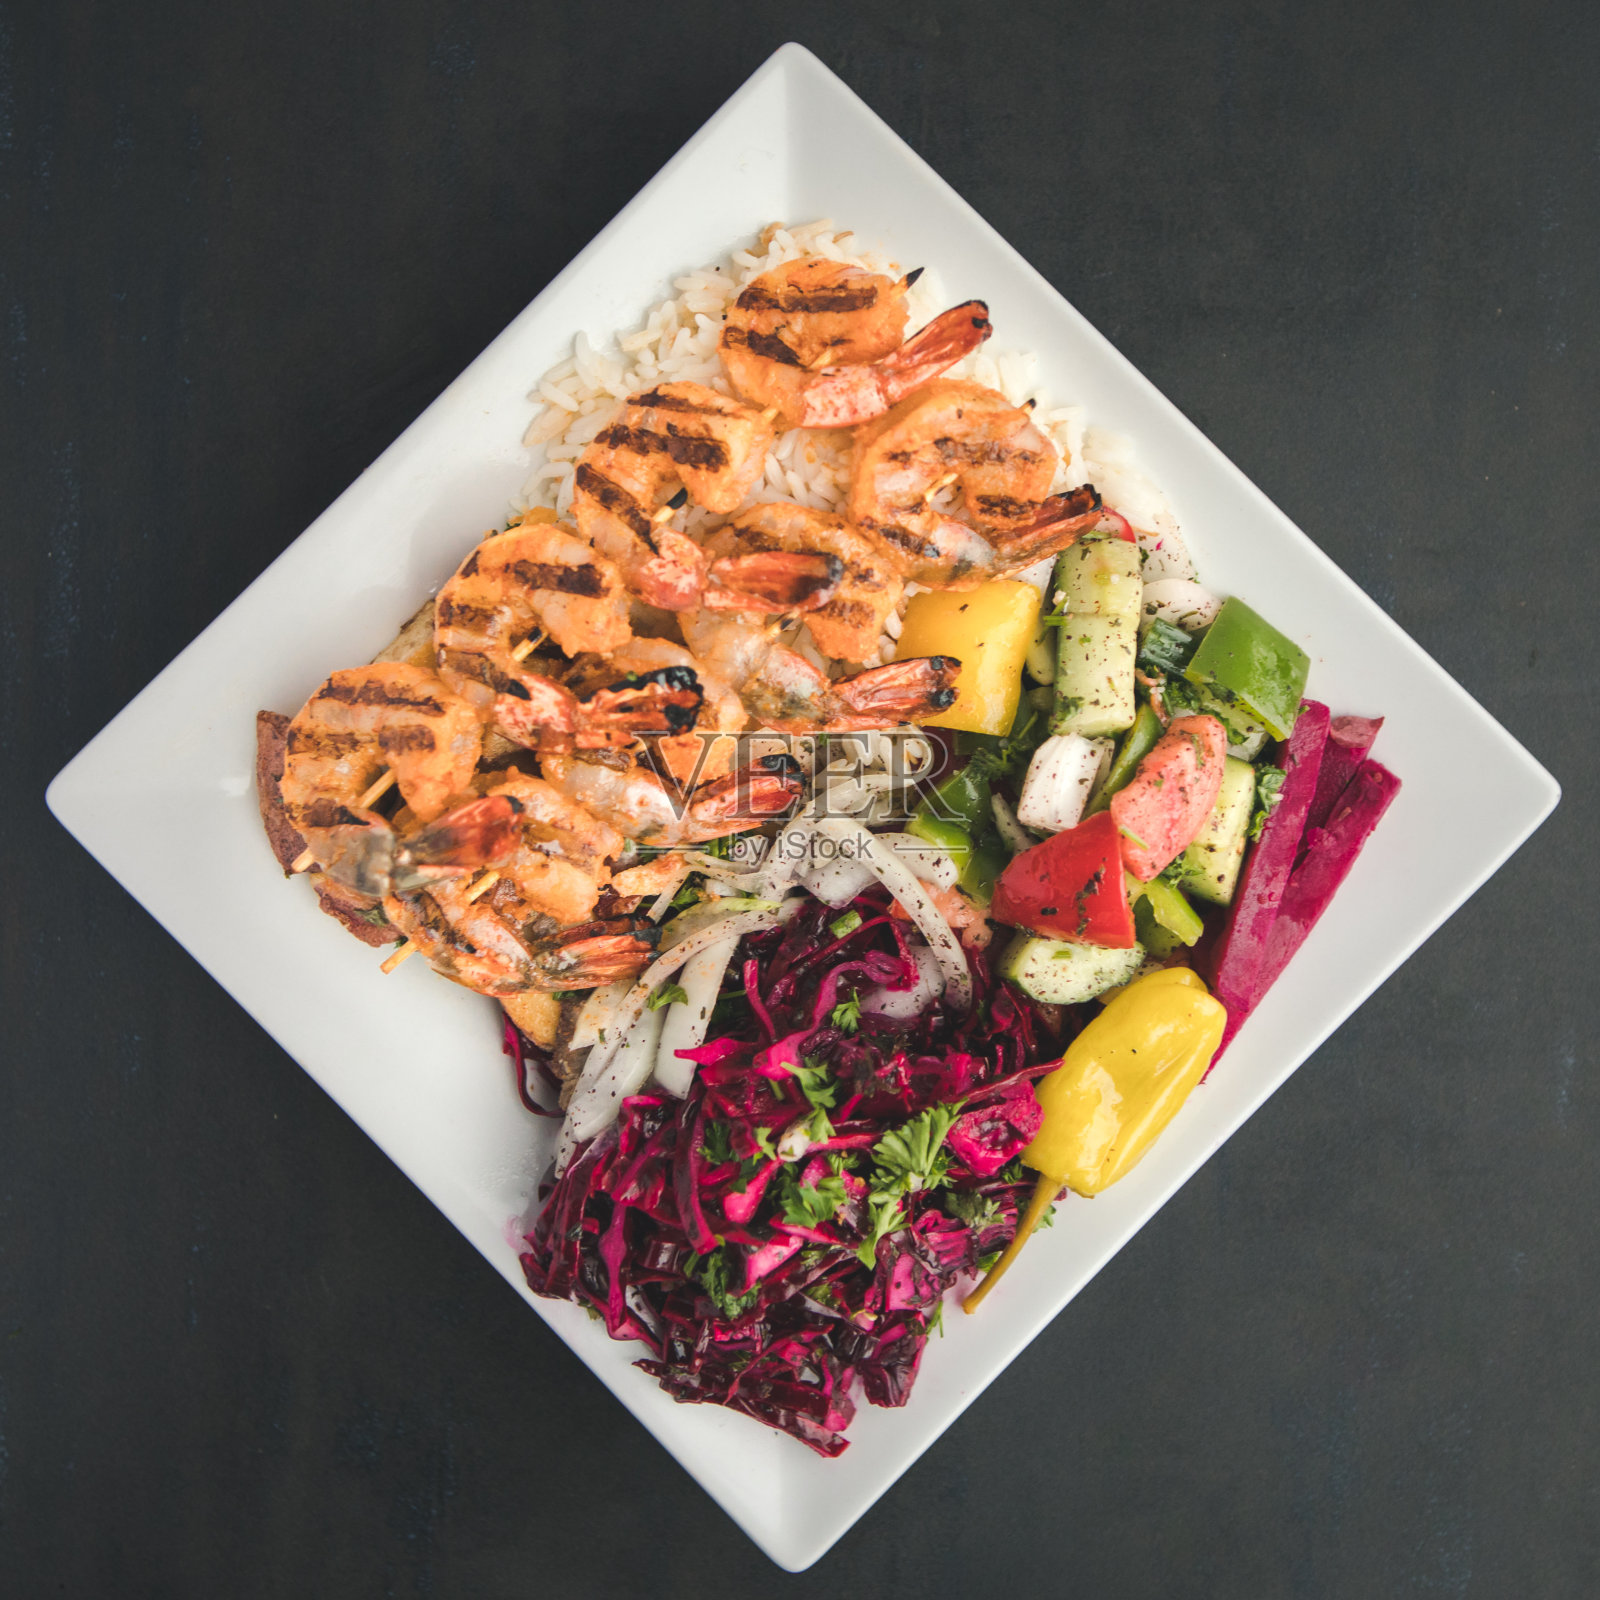 地中海食物，烤虾串配米饭和蔬菜
烤虾串配米饭和色彩斑斓的沙拉照片摄影图片